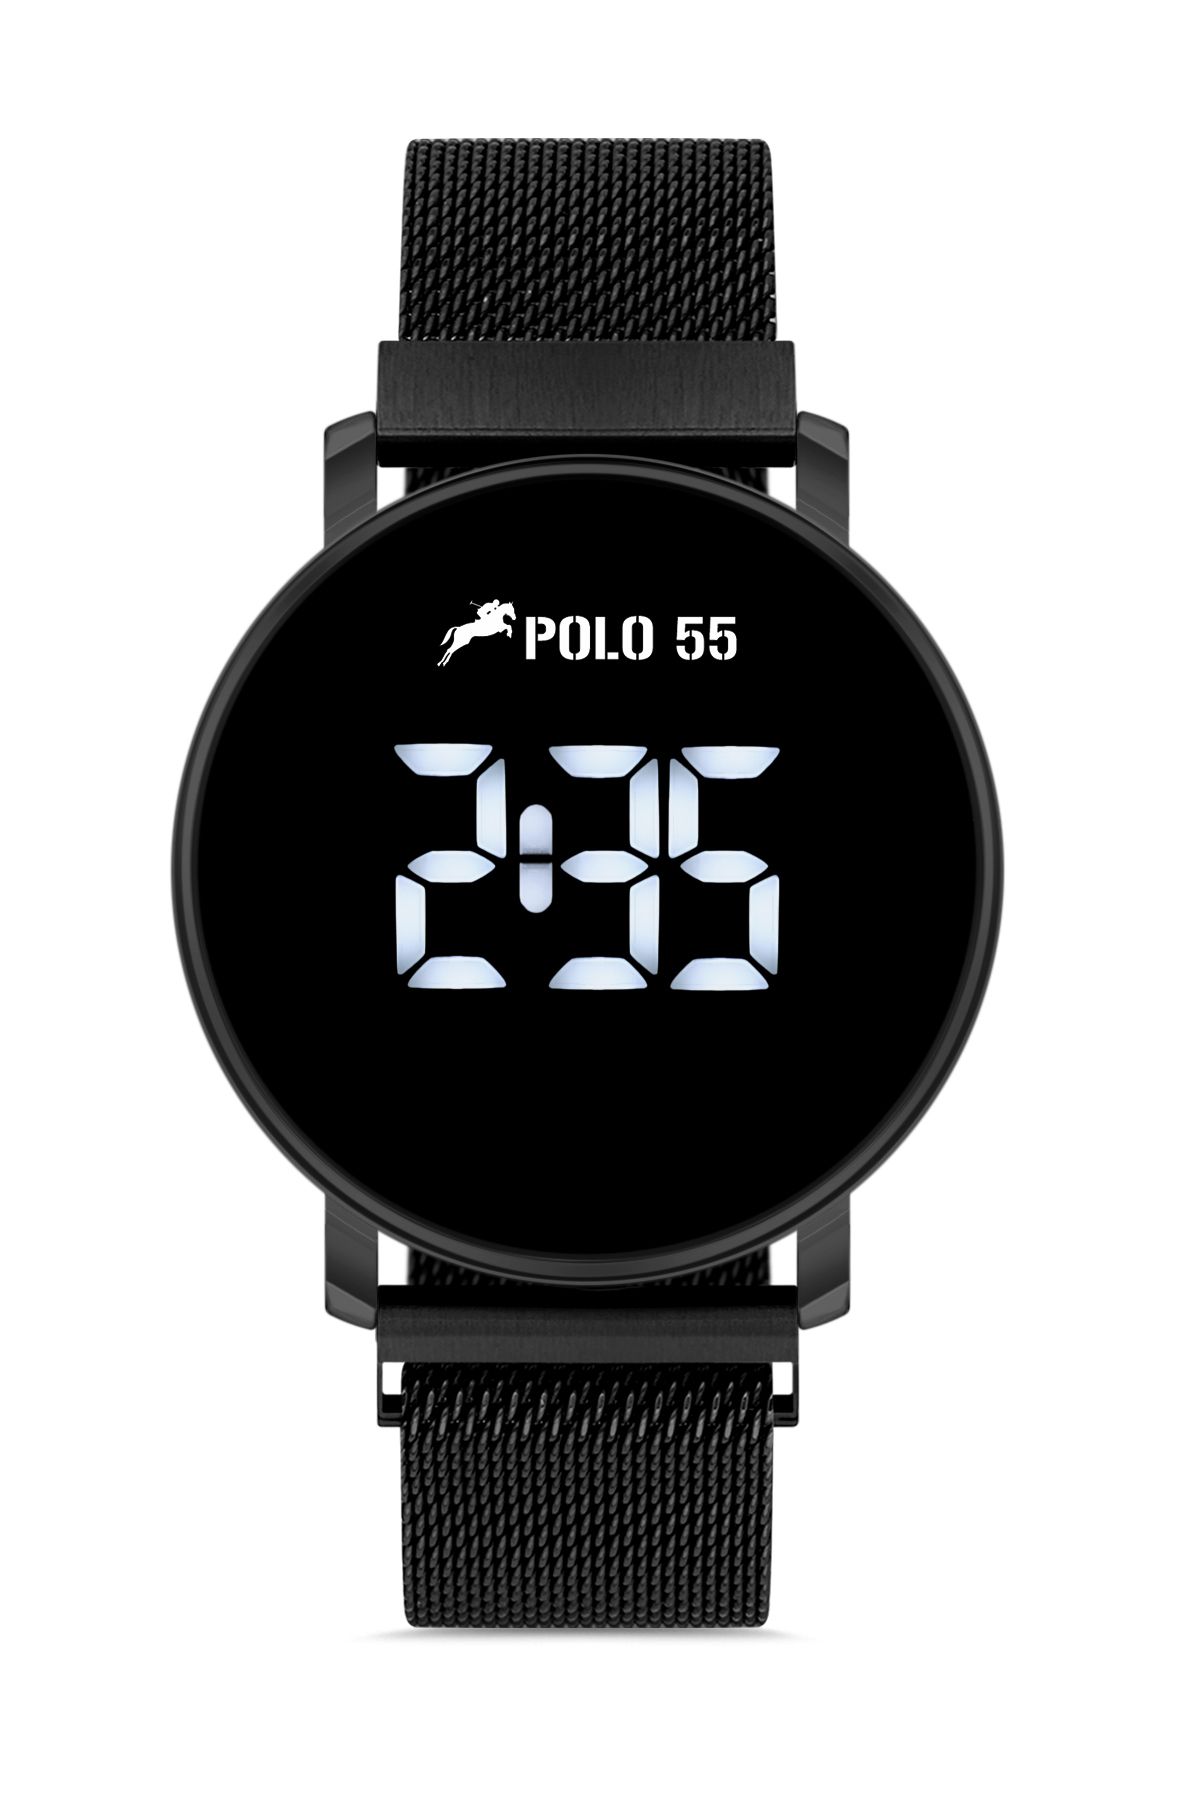 Polo55 Siyah Dokunmatik Dijital Hasır Kordon Kadın Kol Saati